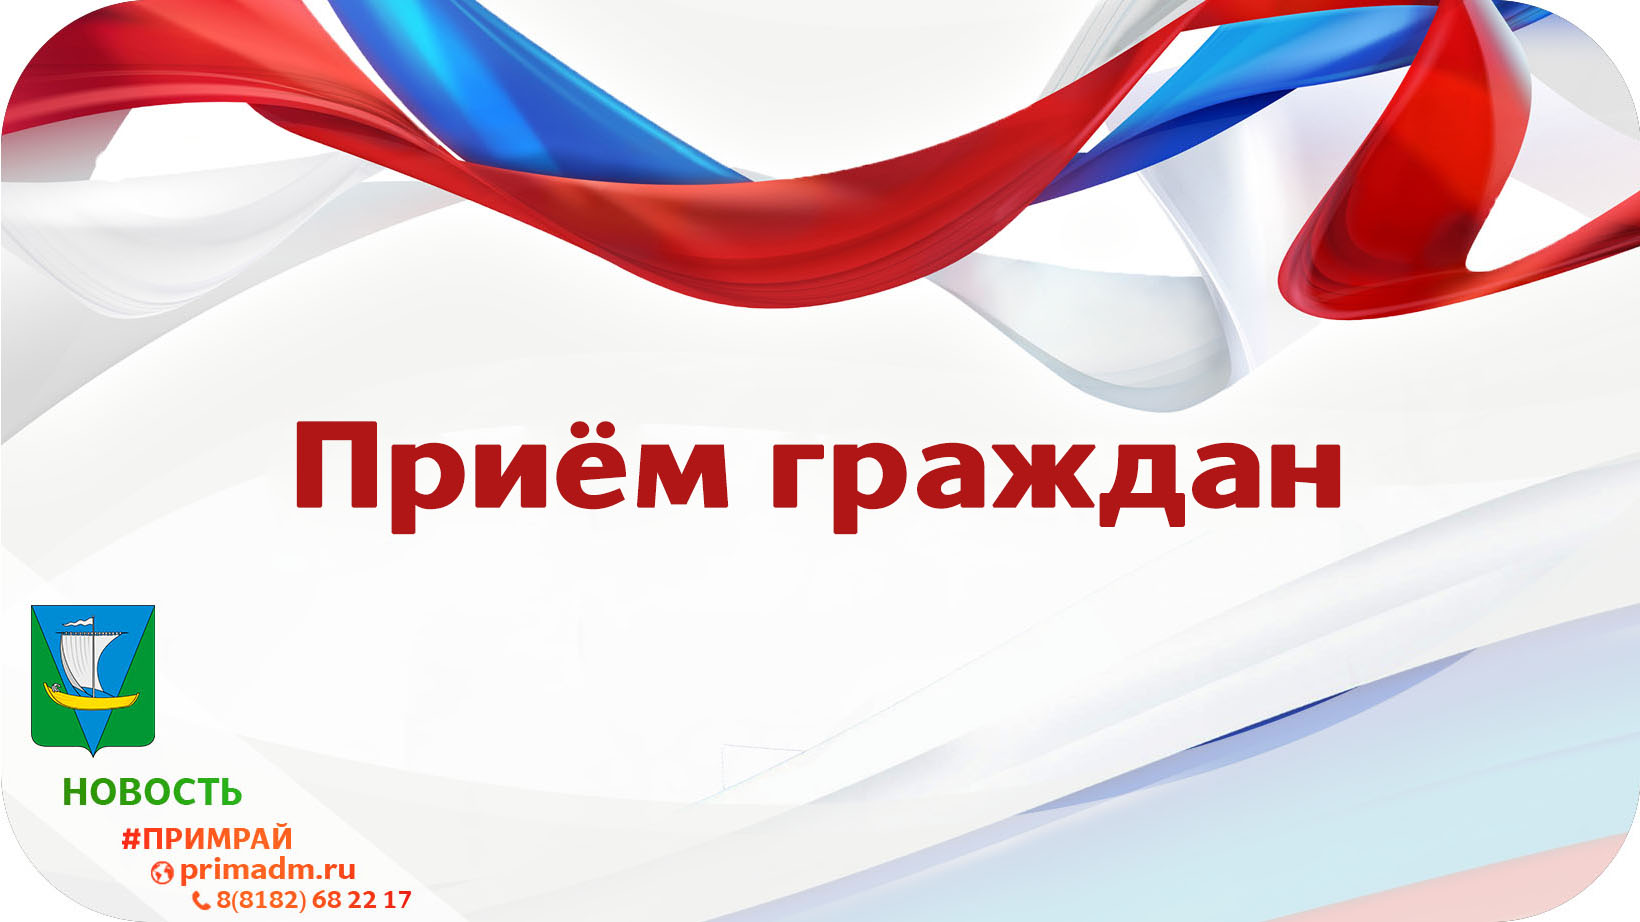 Глава Приморского района провела очередной прием граждан